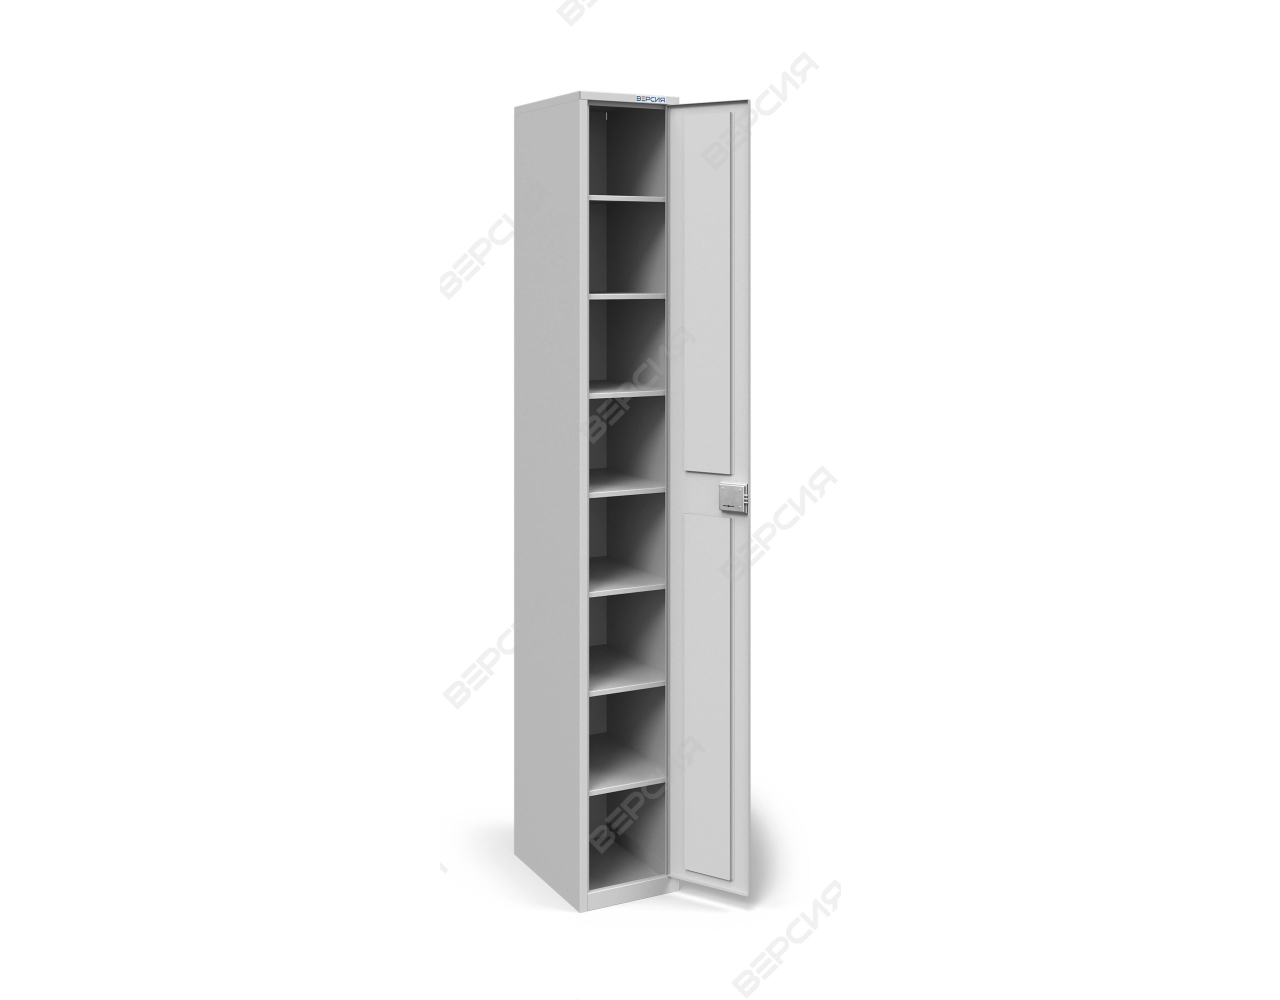 Металлический шкаф для хранения противогазов на 8 ячеек, с дверью_2